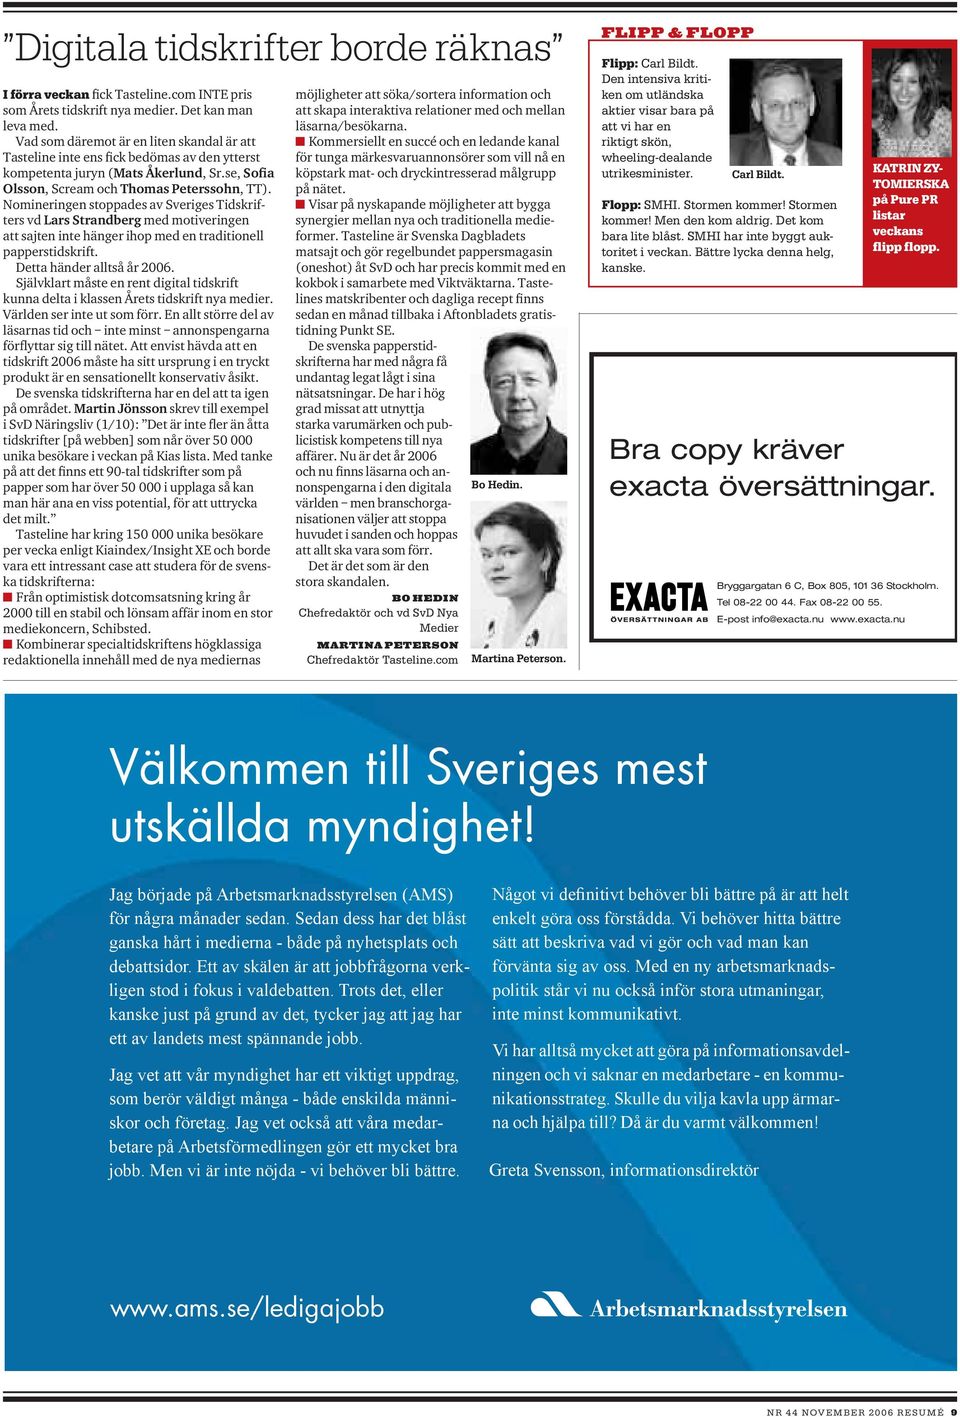 Nomineringen stoppades av Sveriges Tidskrifters vd Lars Strandberg med motiveringen att sajten inte hänger ihop med en traditionell papperstidskrift. Detta händer alltså år 2006.